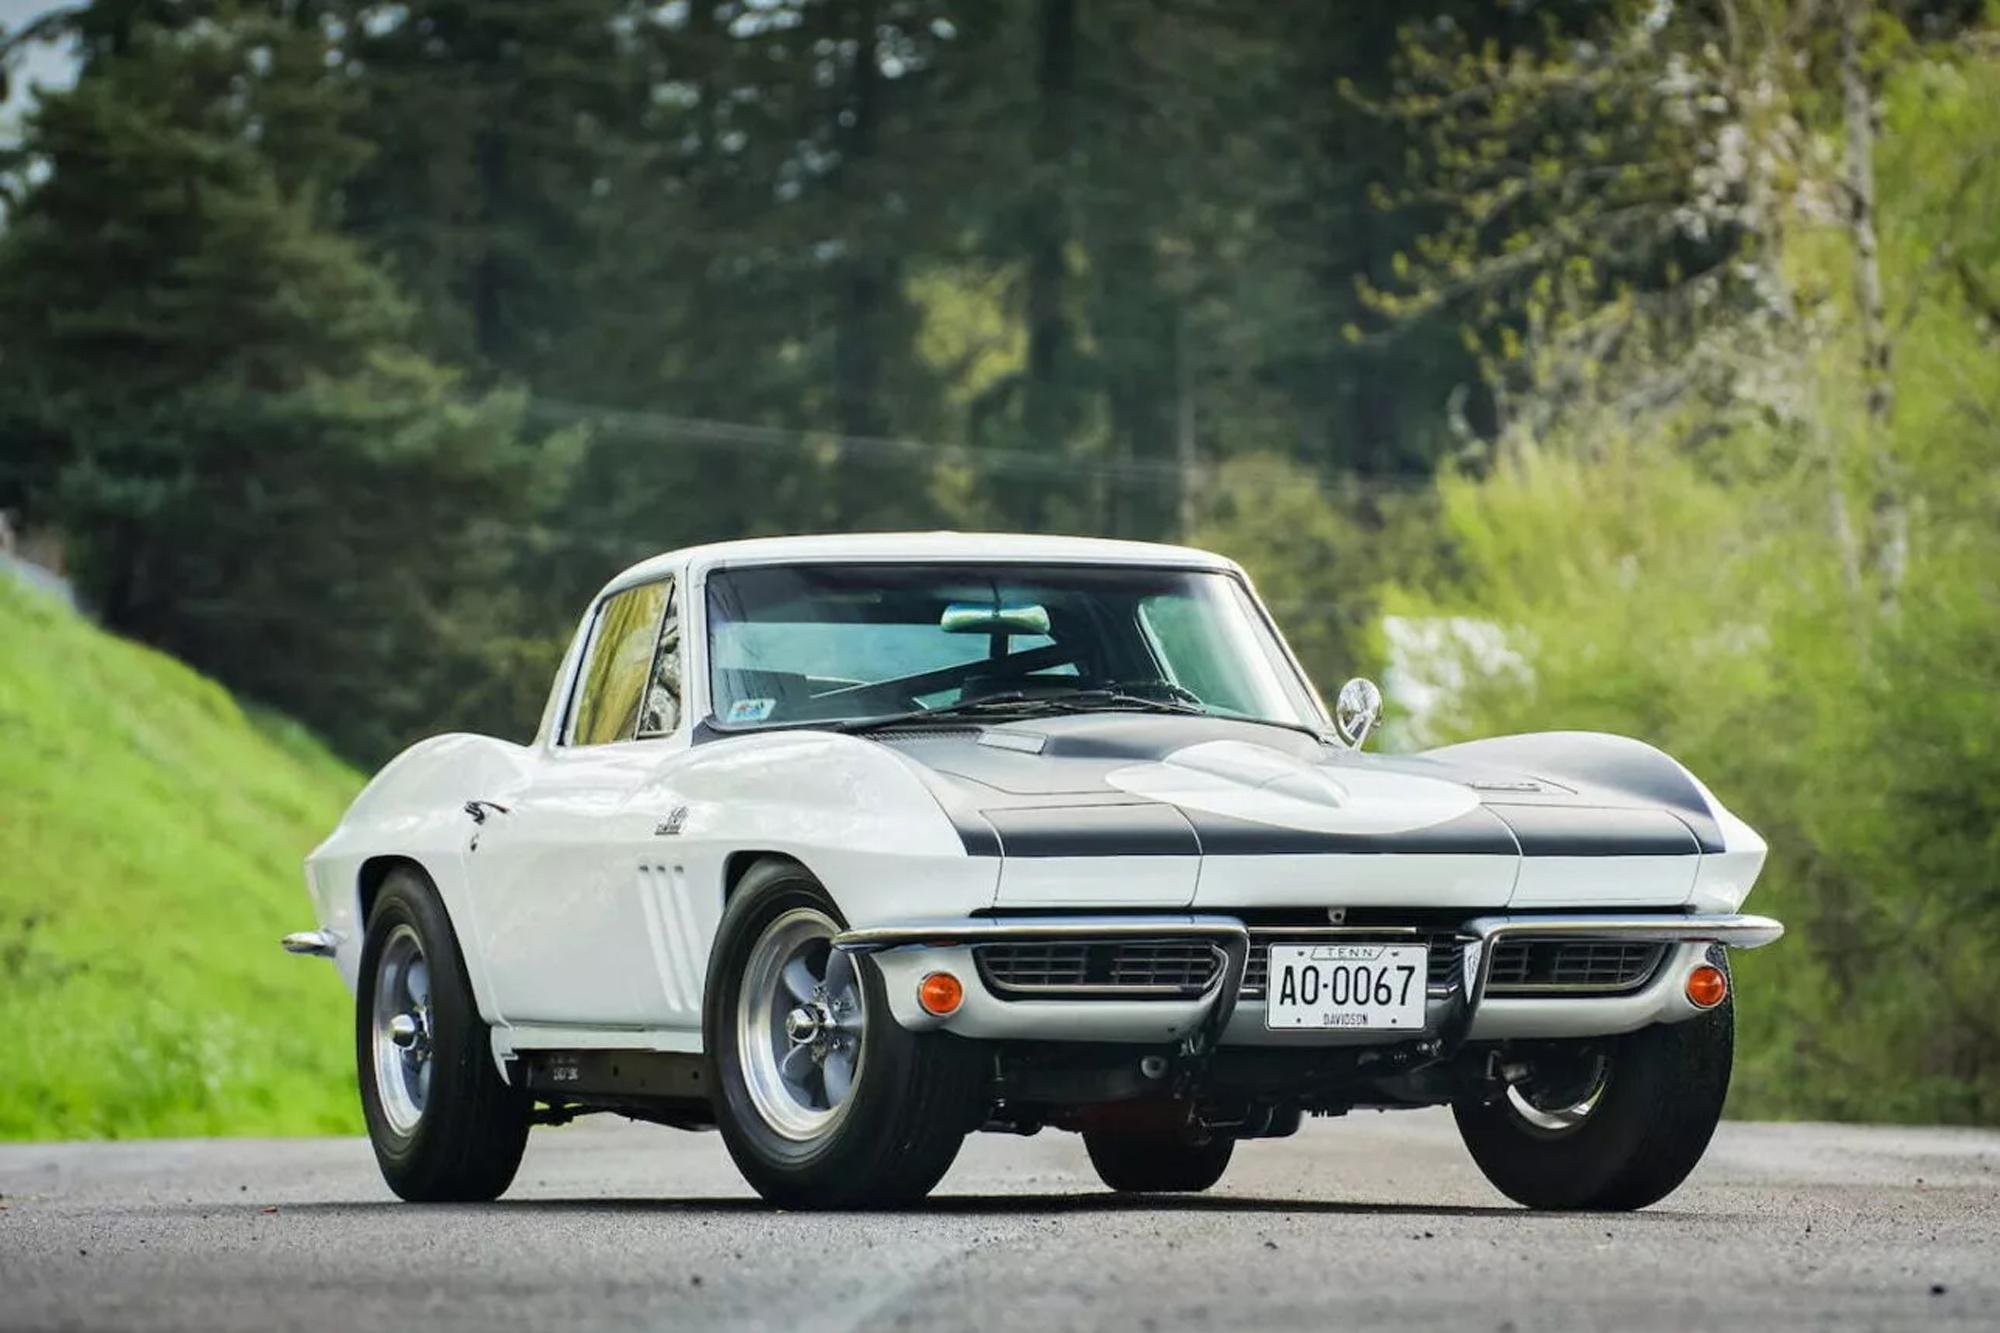 Πωλείται μια σπάνια Corvette Sting Ray του 1966